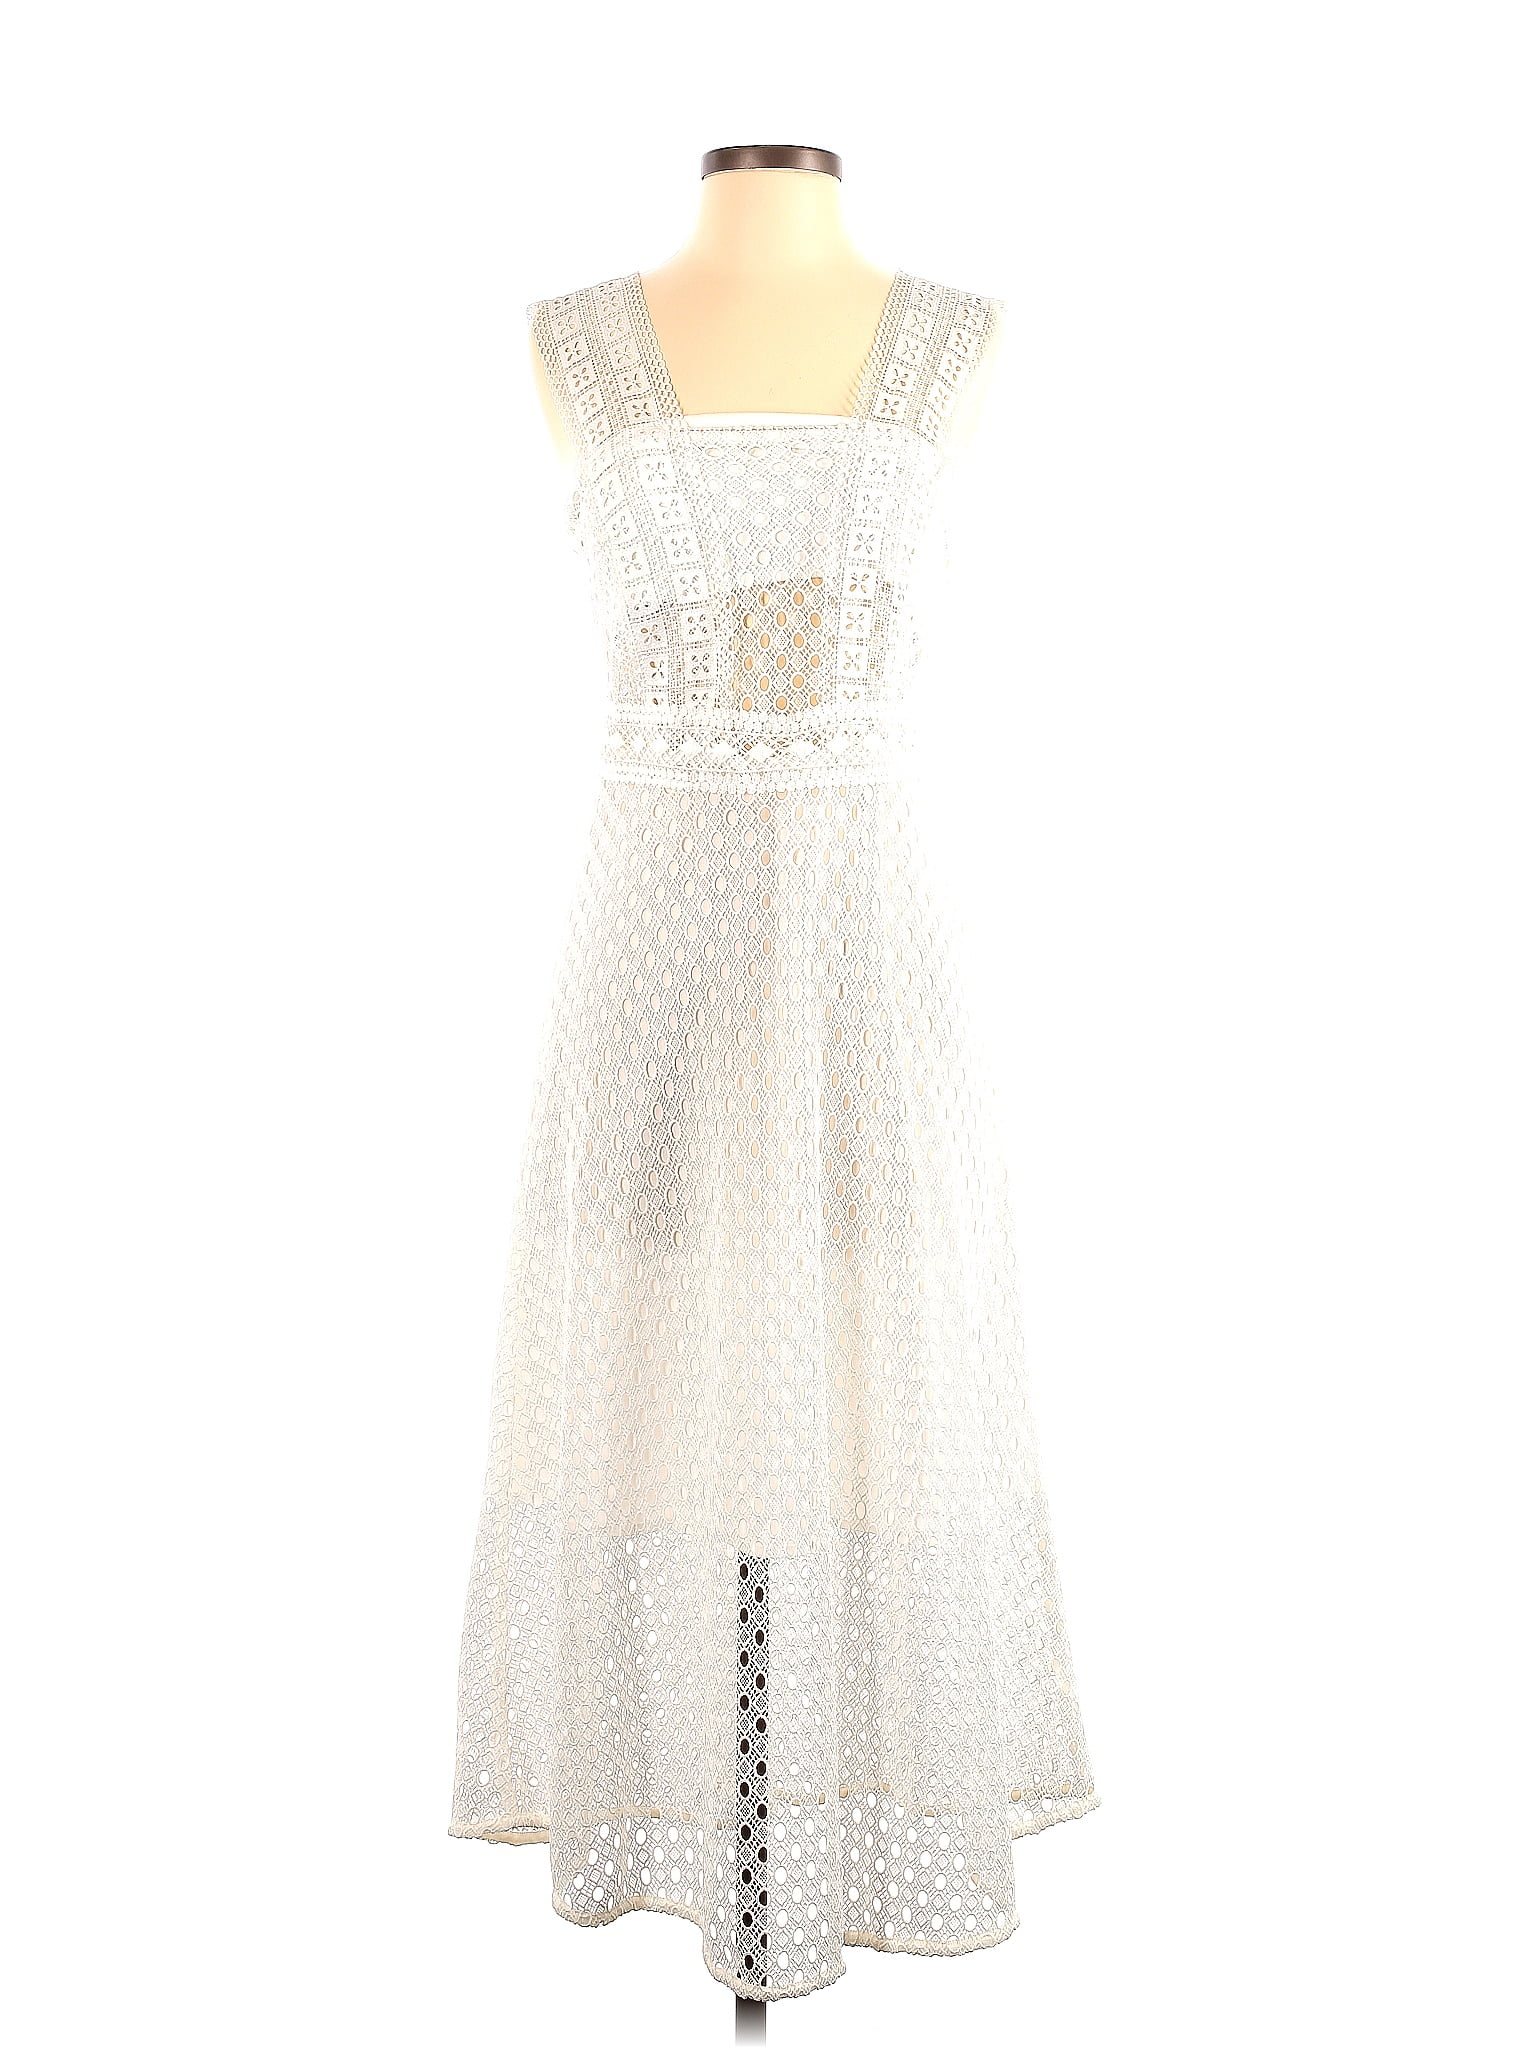 Sandro 100% Polyester White Cocktail Dress Size 36 (EU) - 80% off | ThredUp